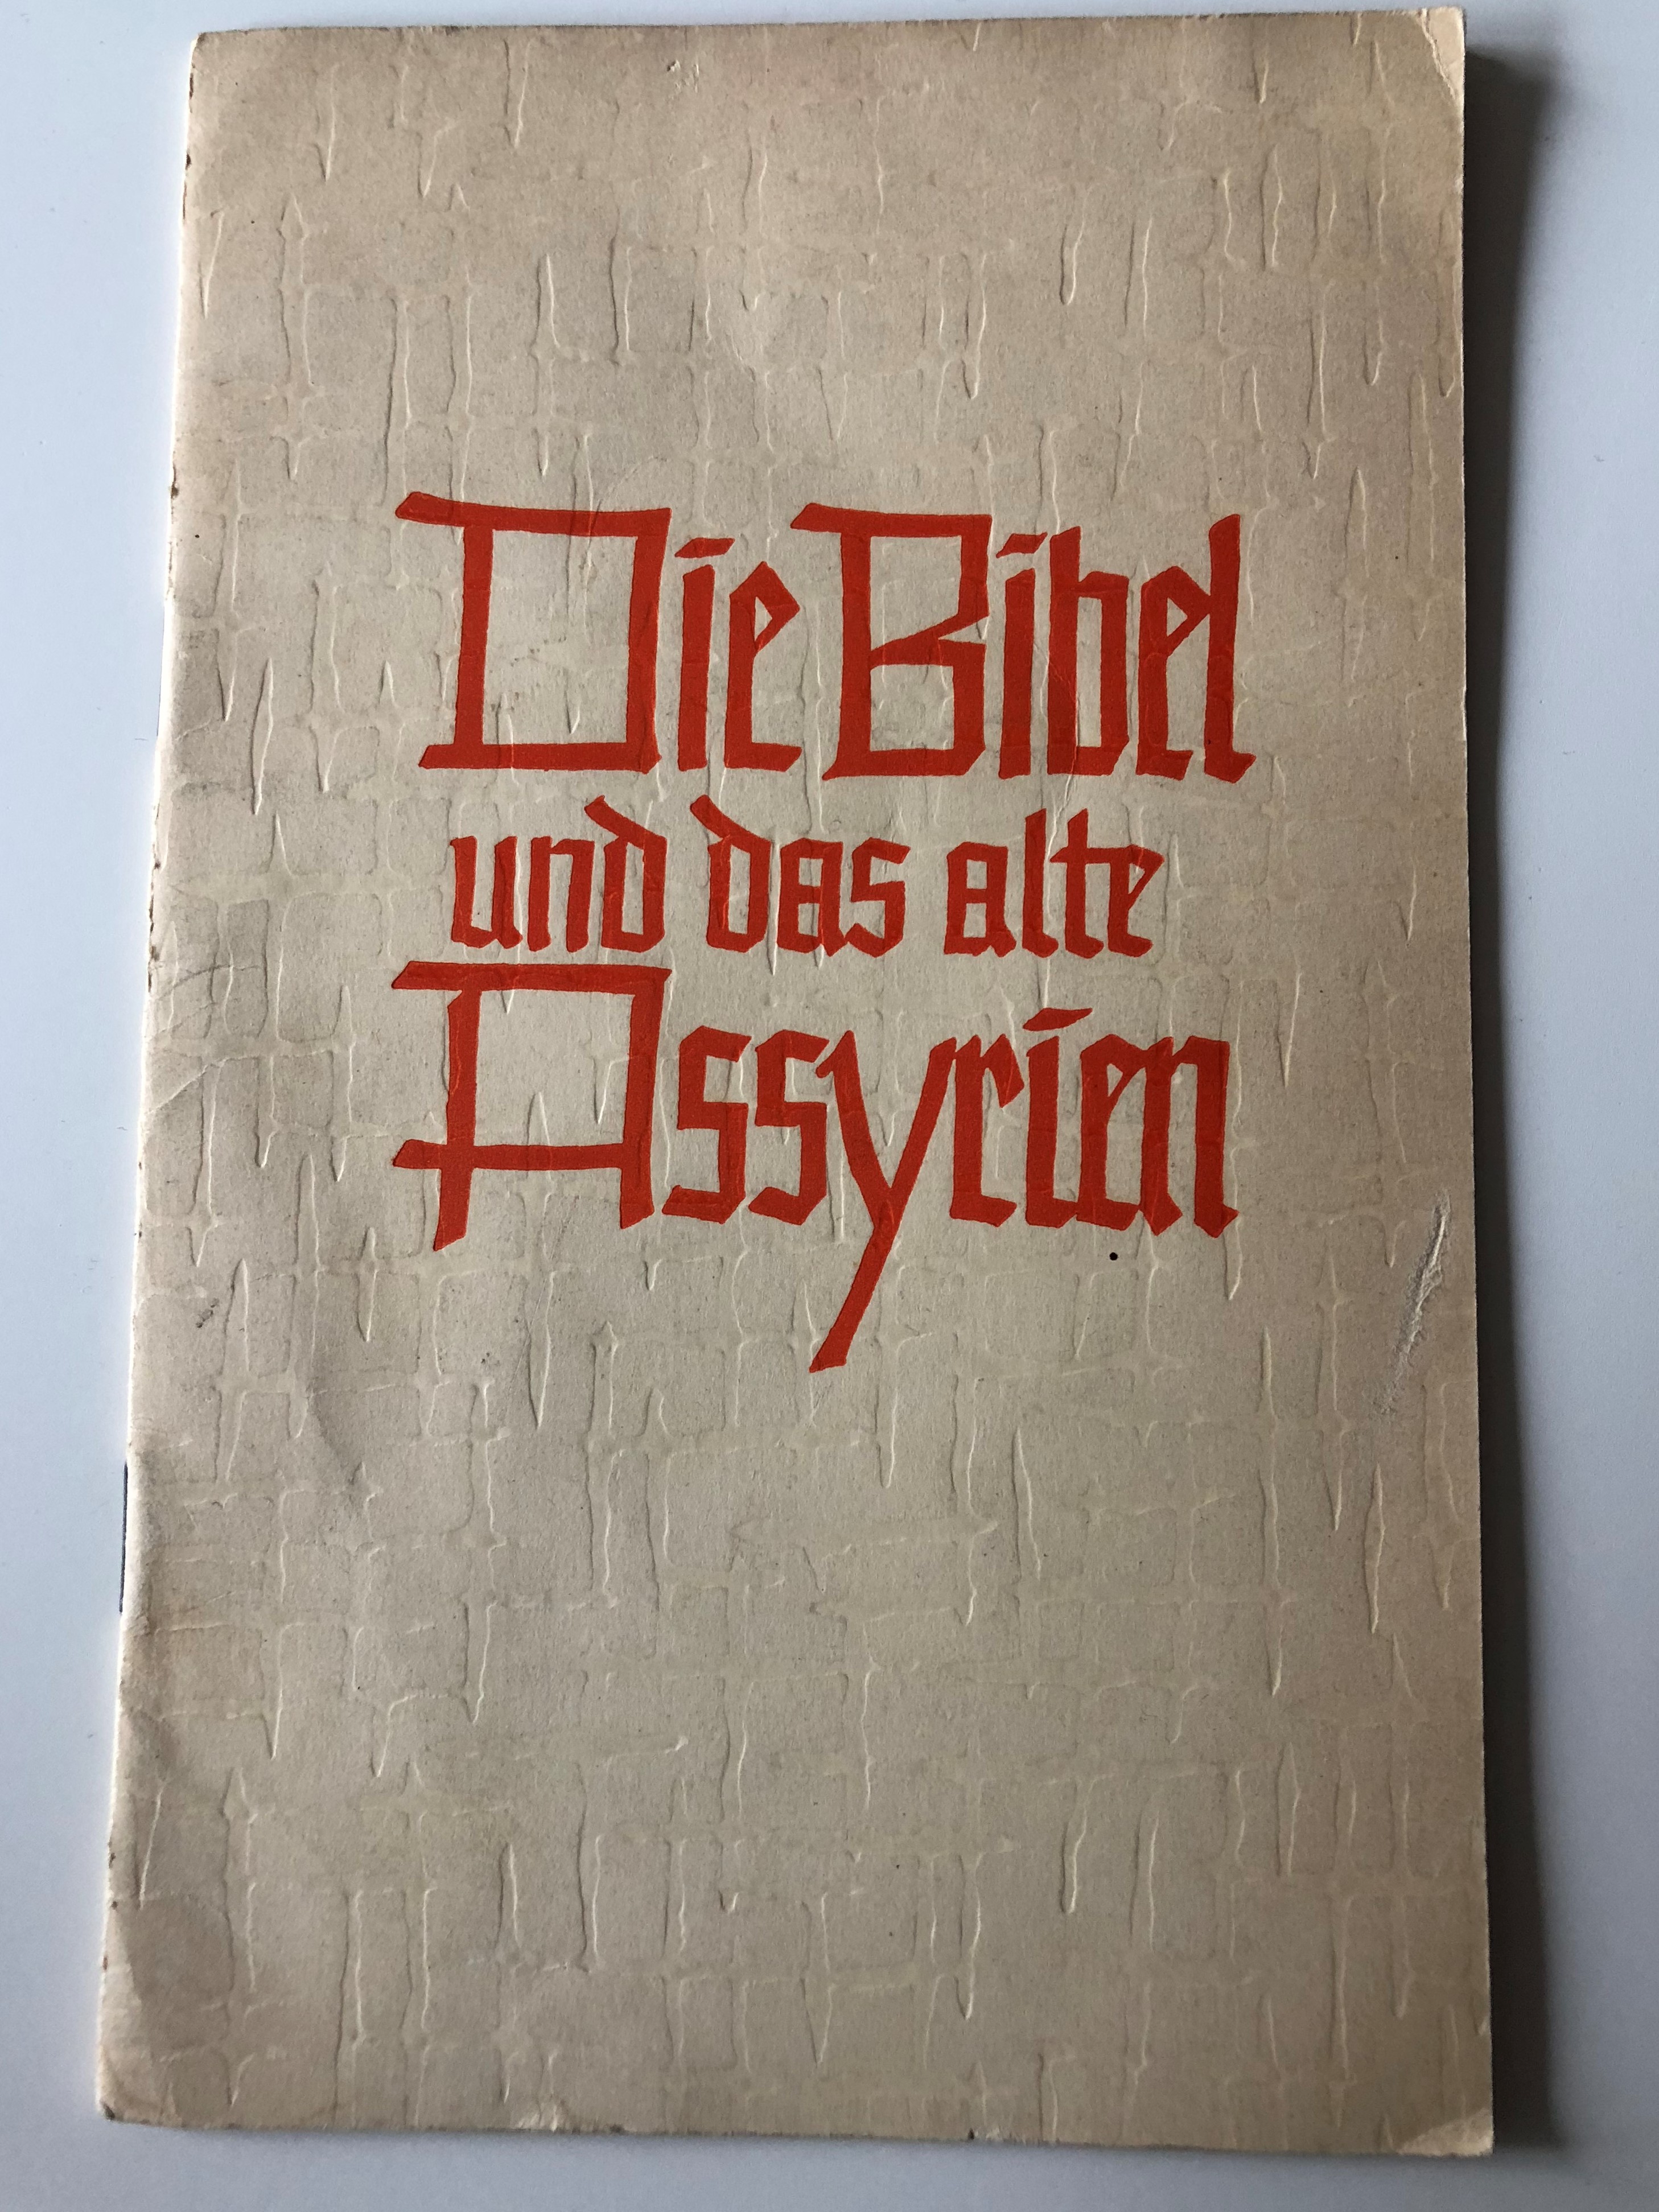 die-bibel-und-das-alten-assyrien-the-bible-and-the-old-assyrians-in-german-language-matthias-schulz-evangelische-verlagsanstalt-berlin-paperback-1964-1-.jpg